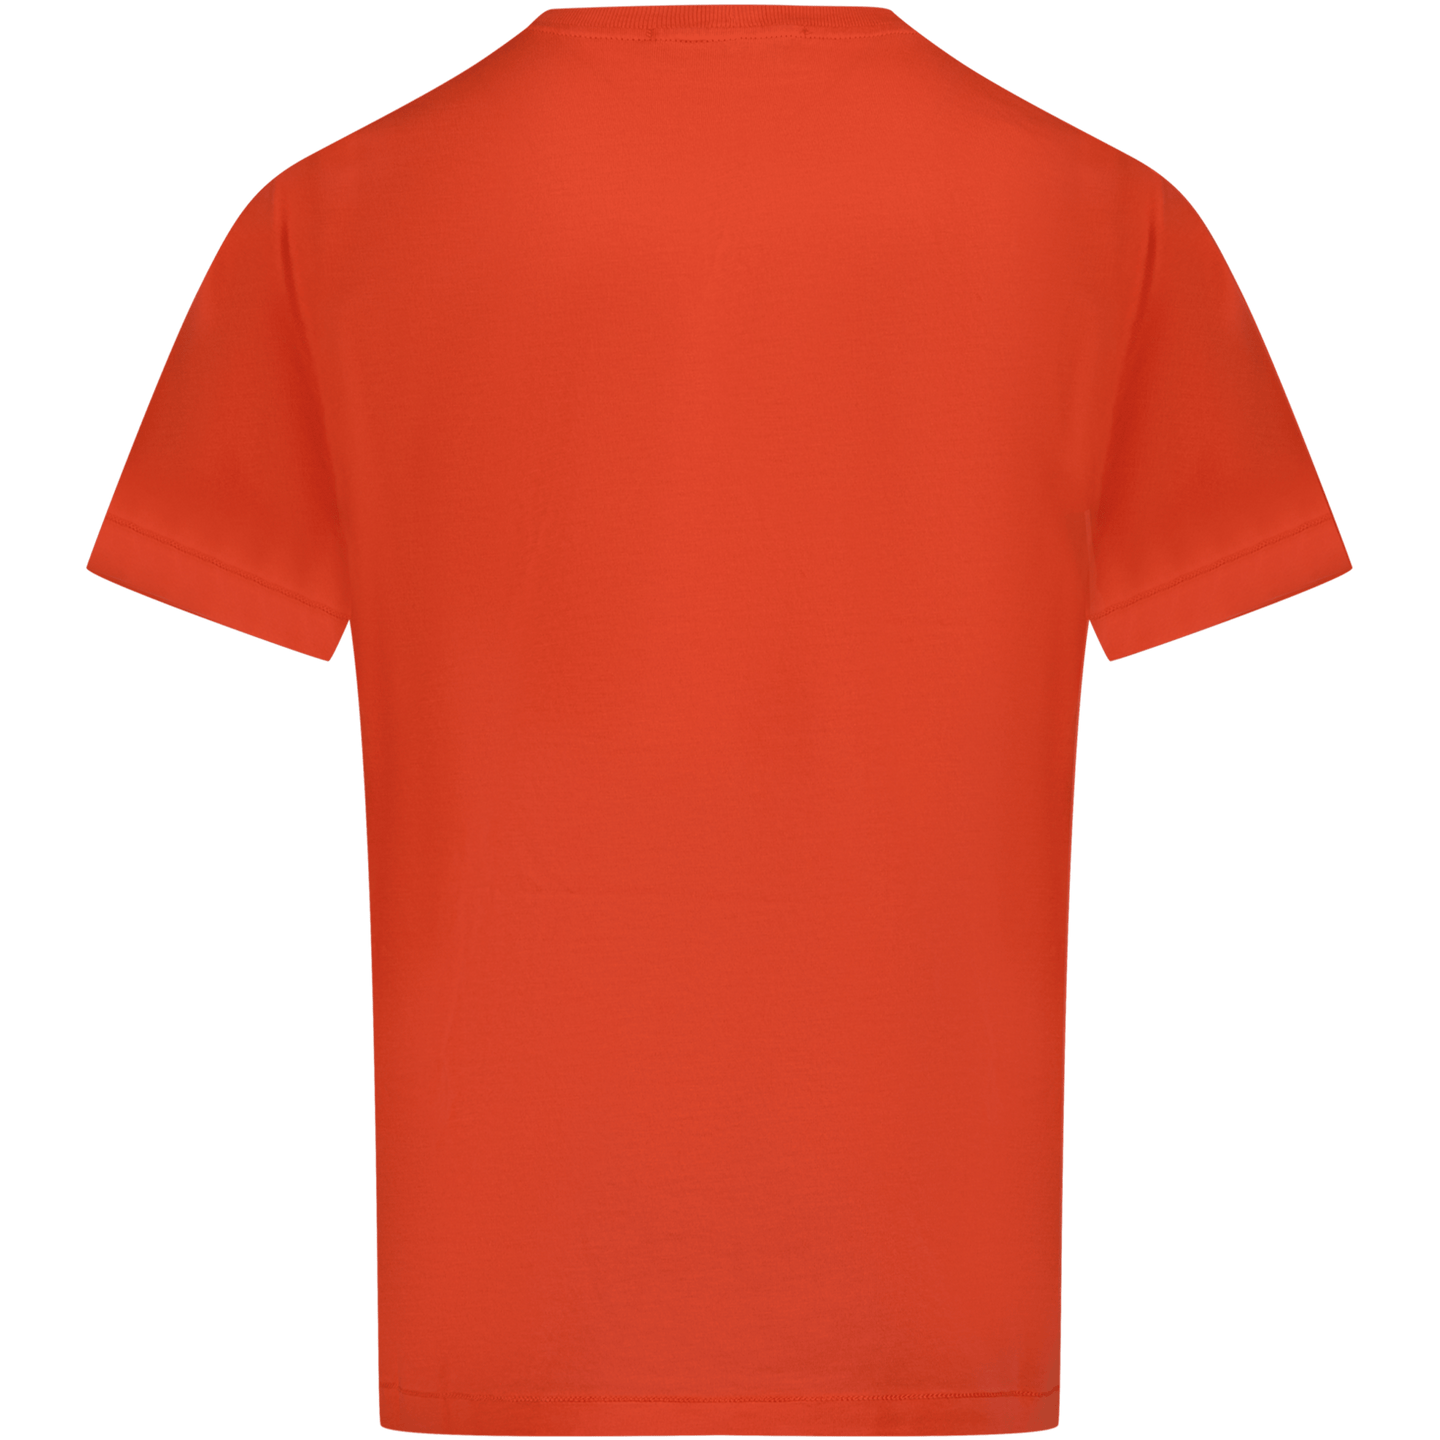 Stone Island Kinder Jongens T-Shirt Rood 2Y